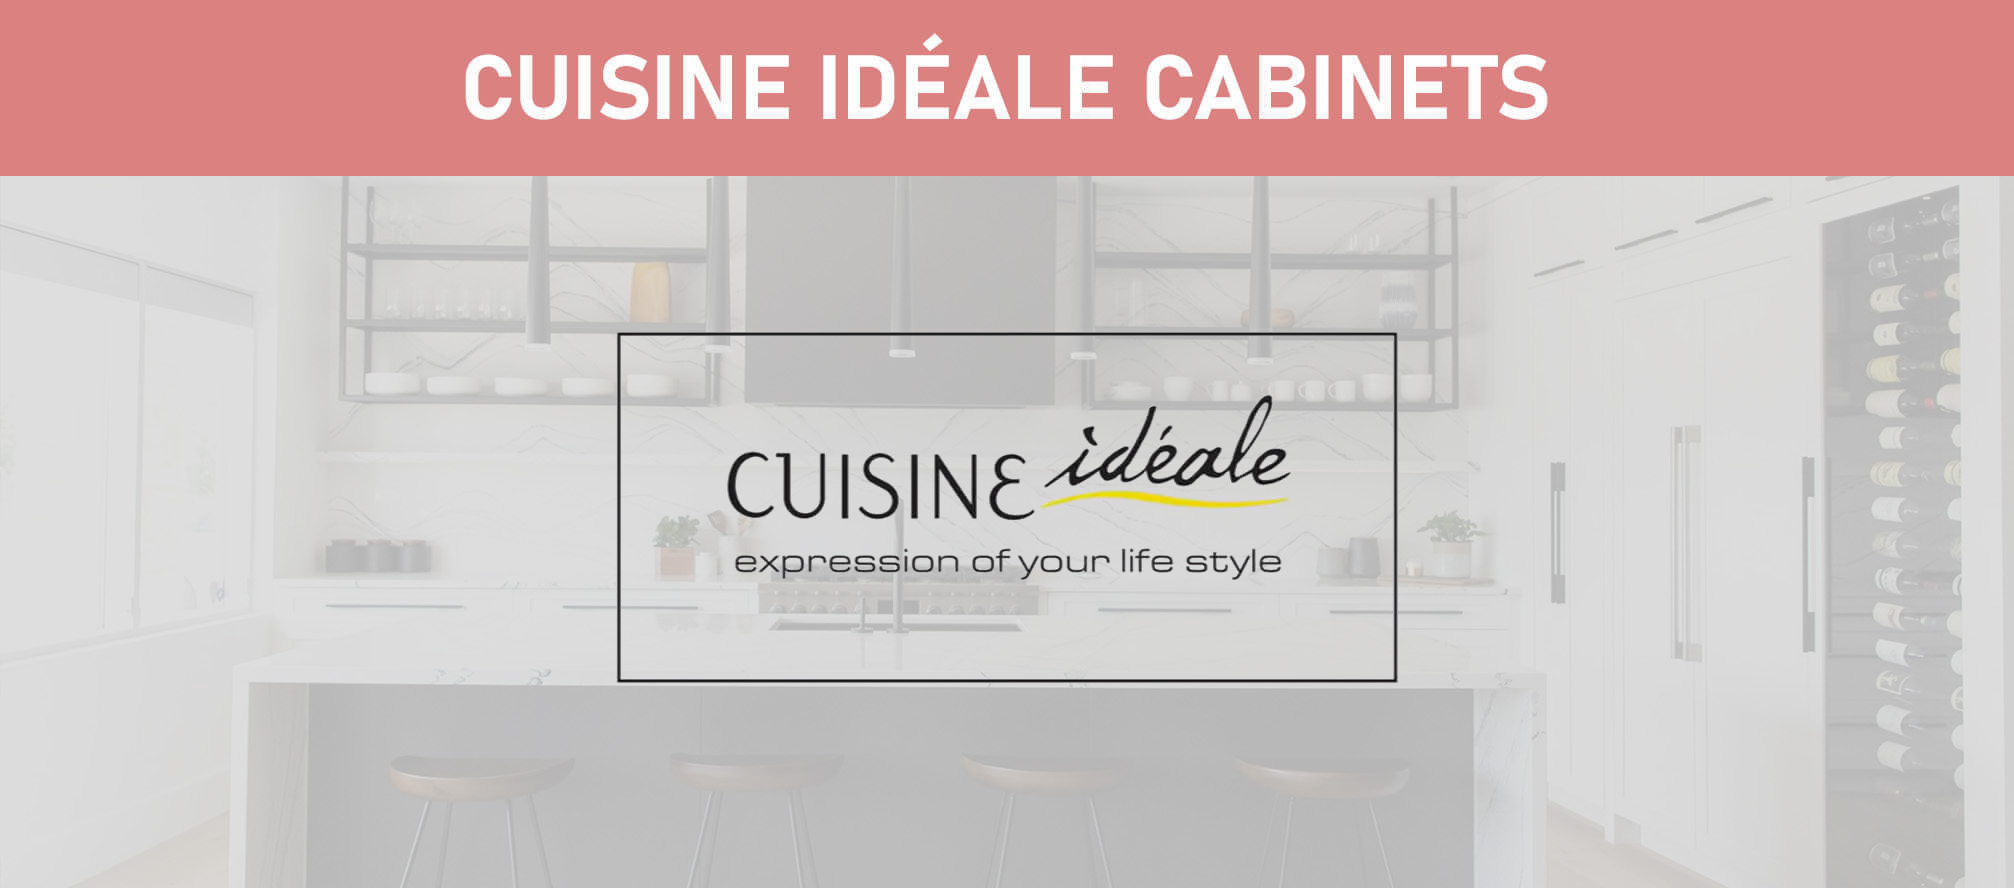 Cuisine Idéale Cabinets Featured image